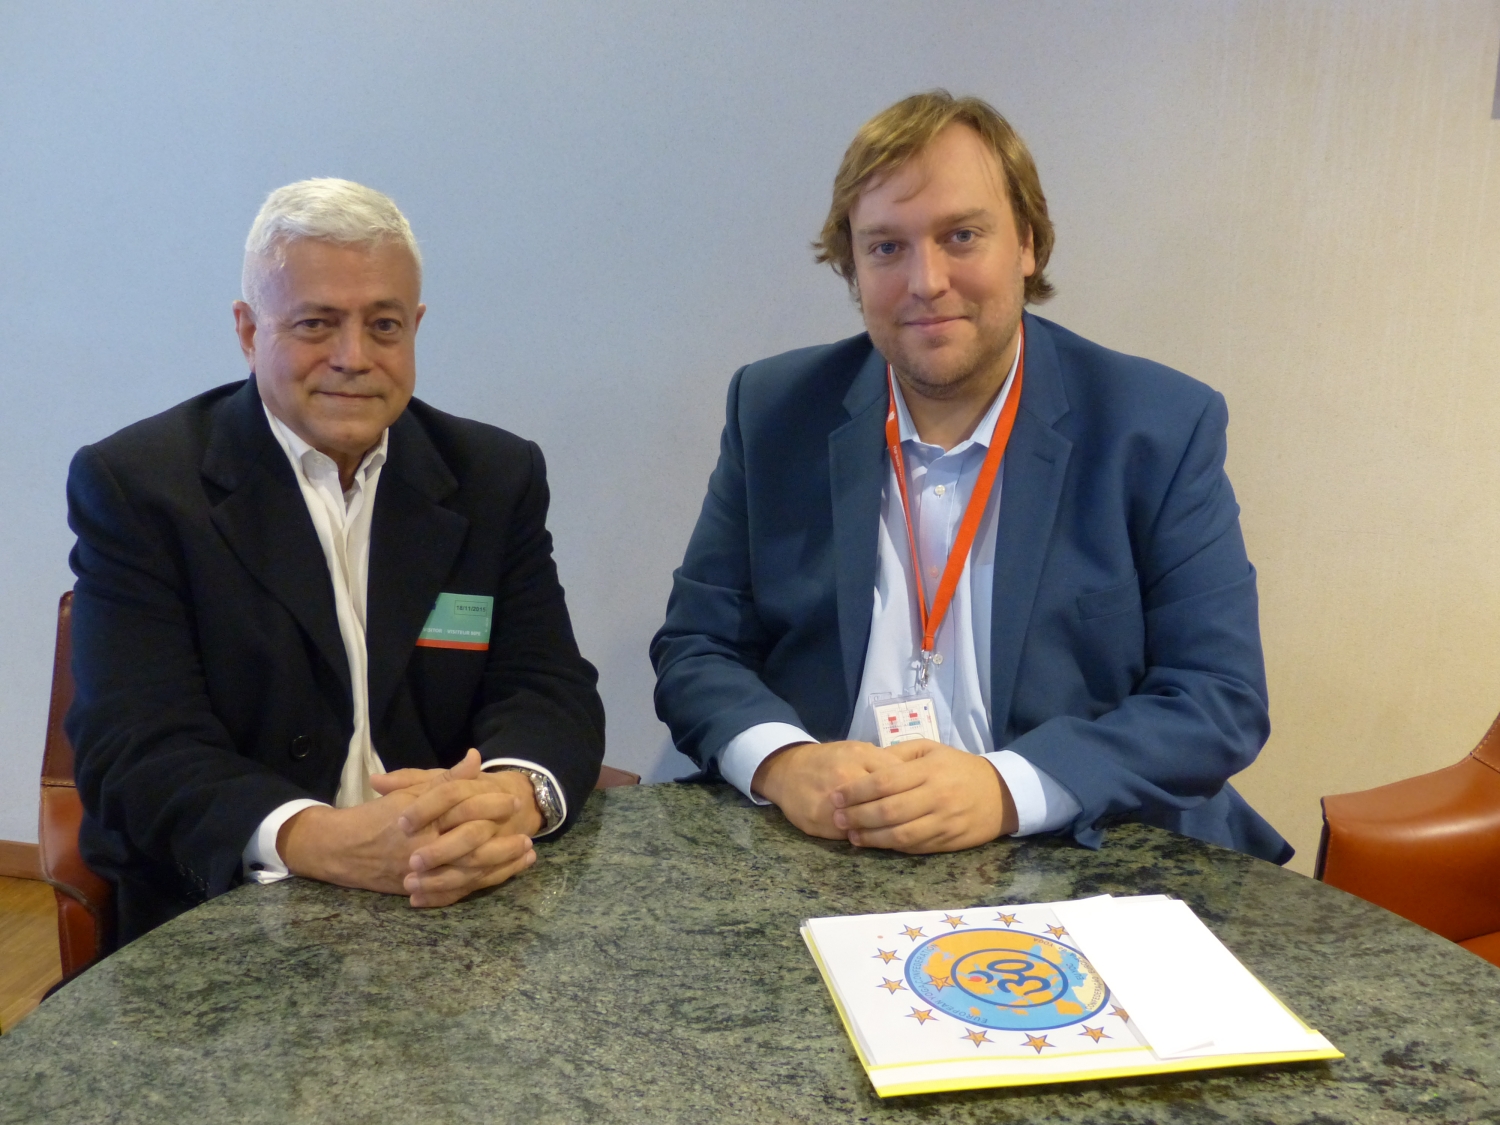 Con Pedro Santo, acesor del Eurodeputado Francisco Assis